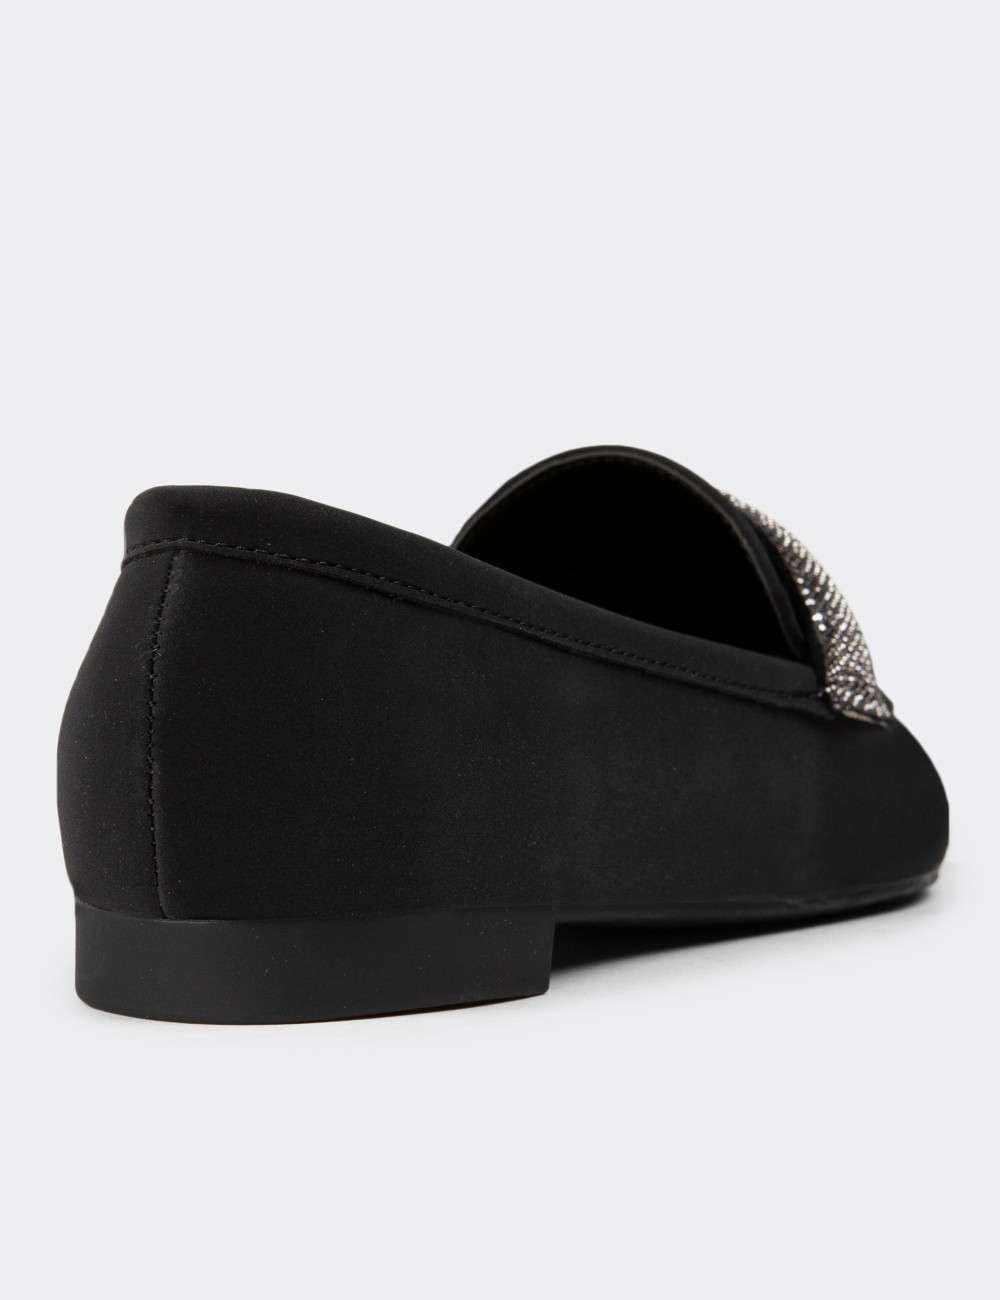 Black Loafers - 38603ZSYHC01